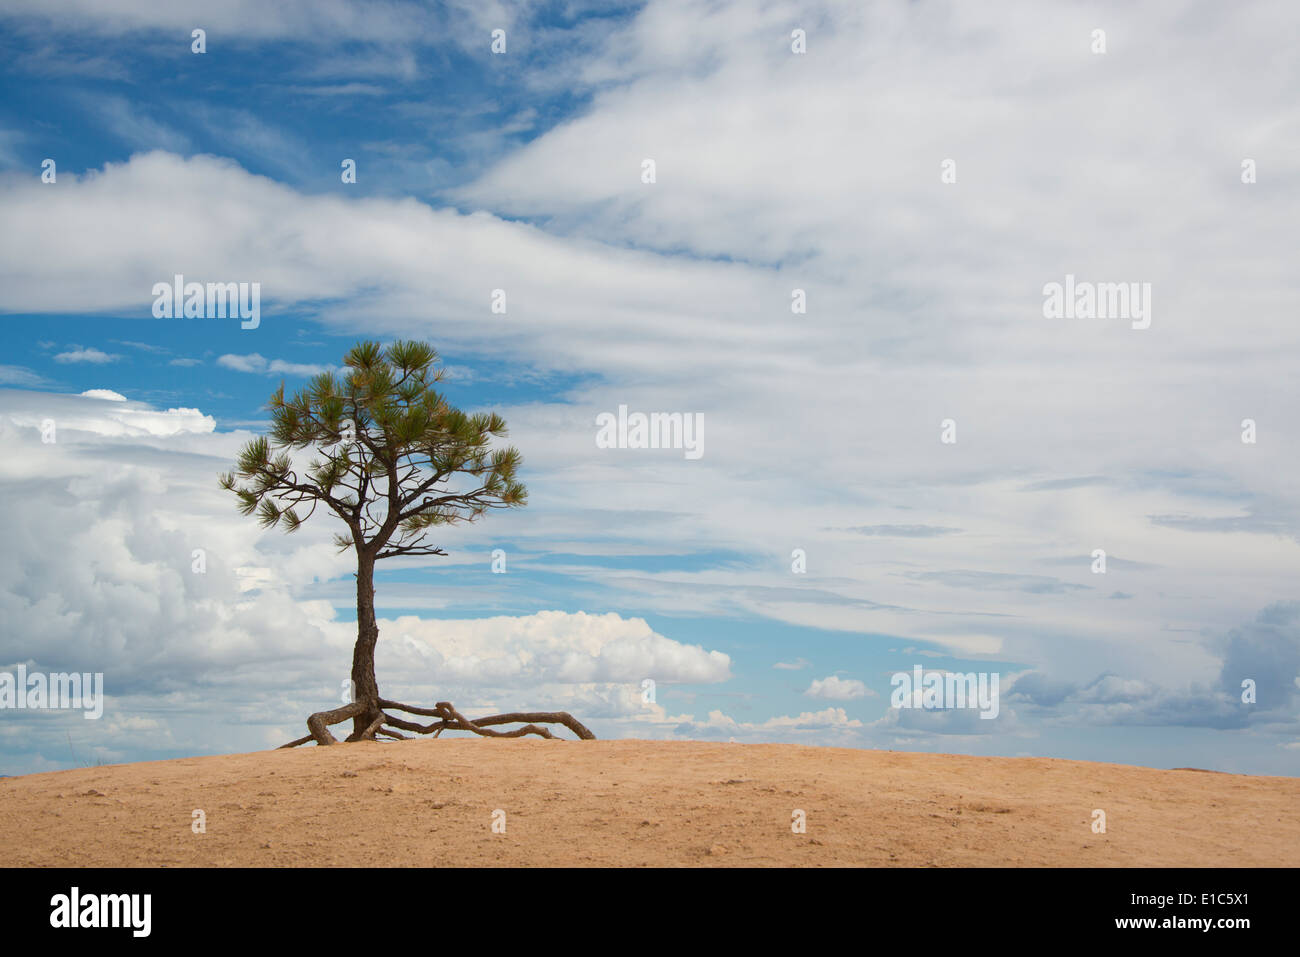 Un seul arbre avec des racines aériennes dans un paysage désertique, dans le parc national de Bryce. Banque D'Images